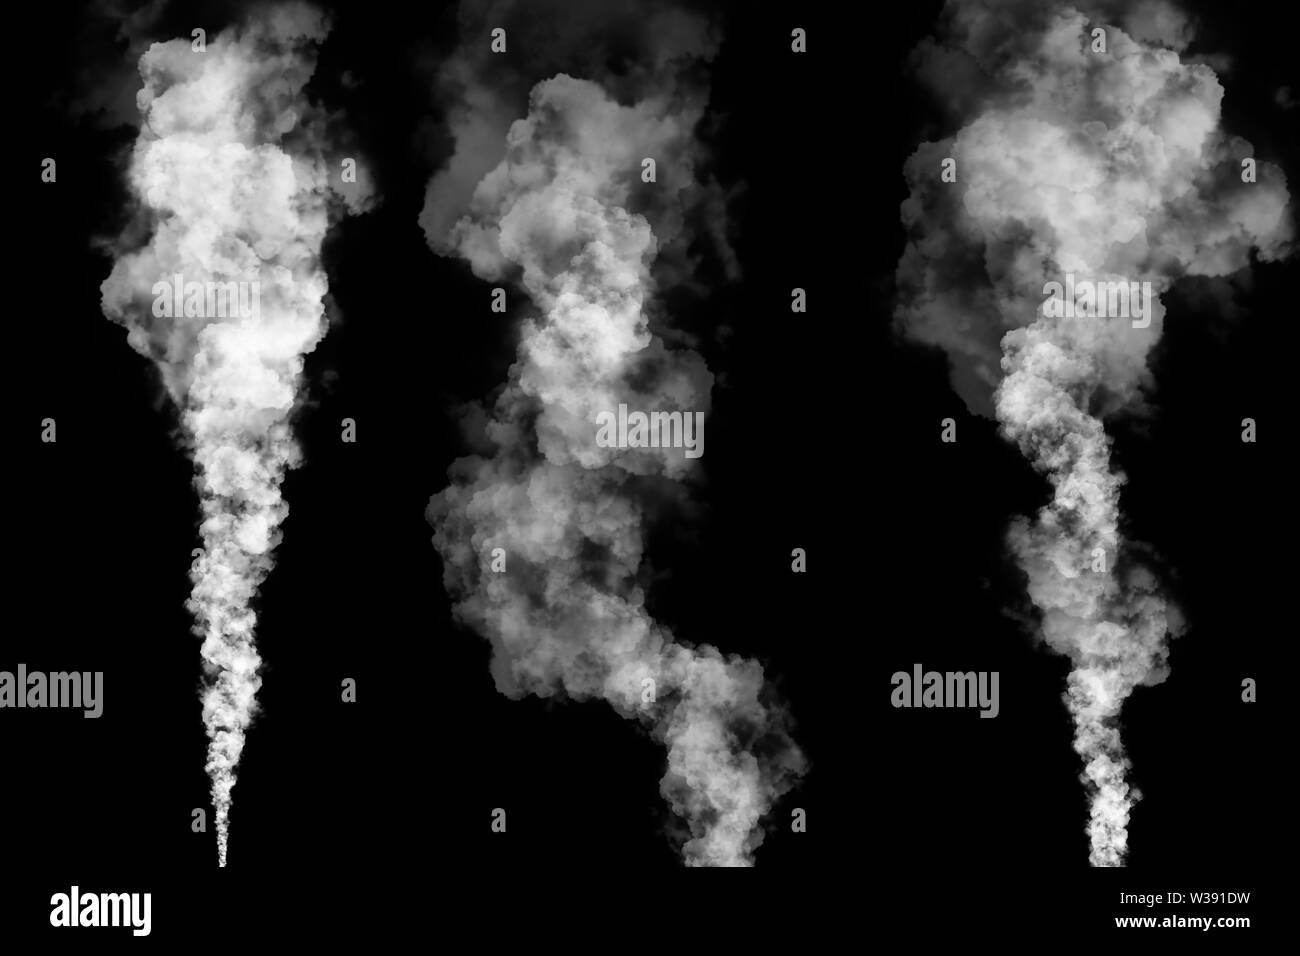 Set of three white smoke plumes on black background Stock Photo